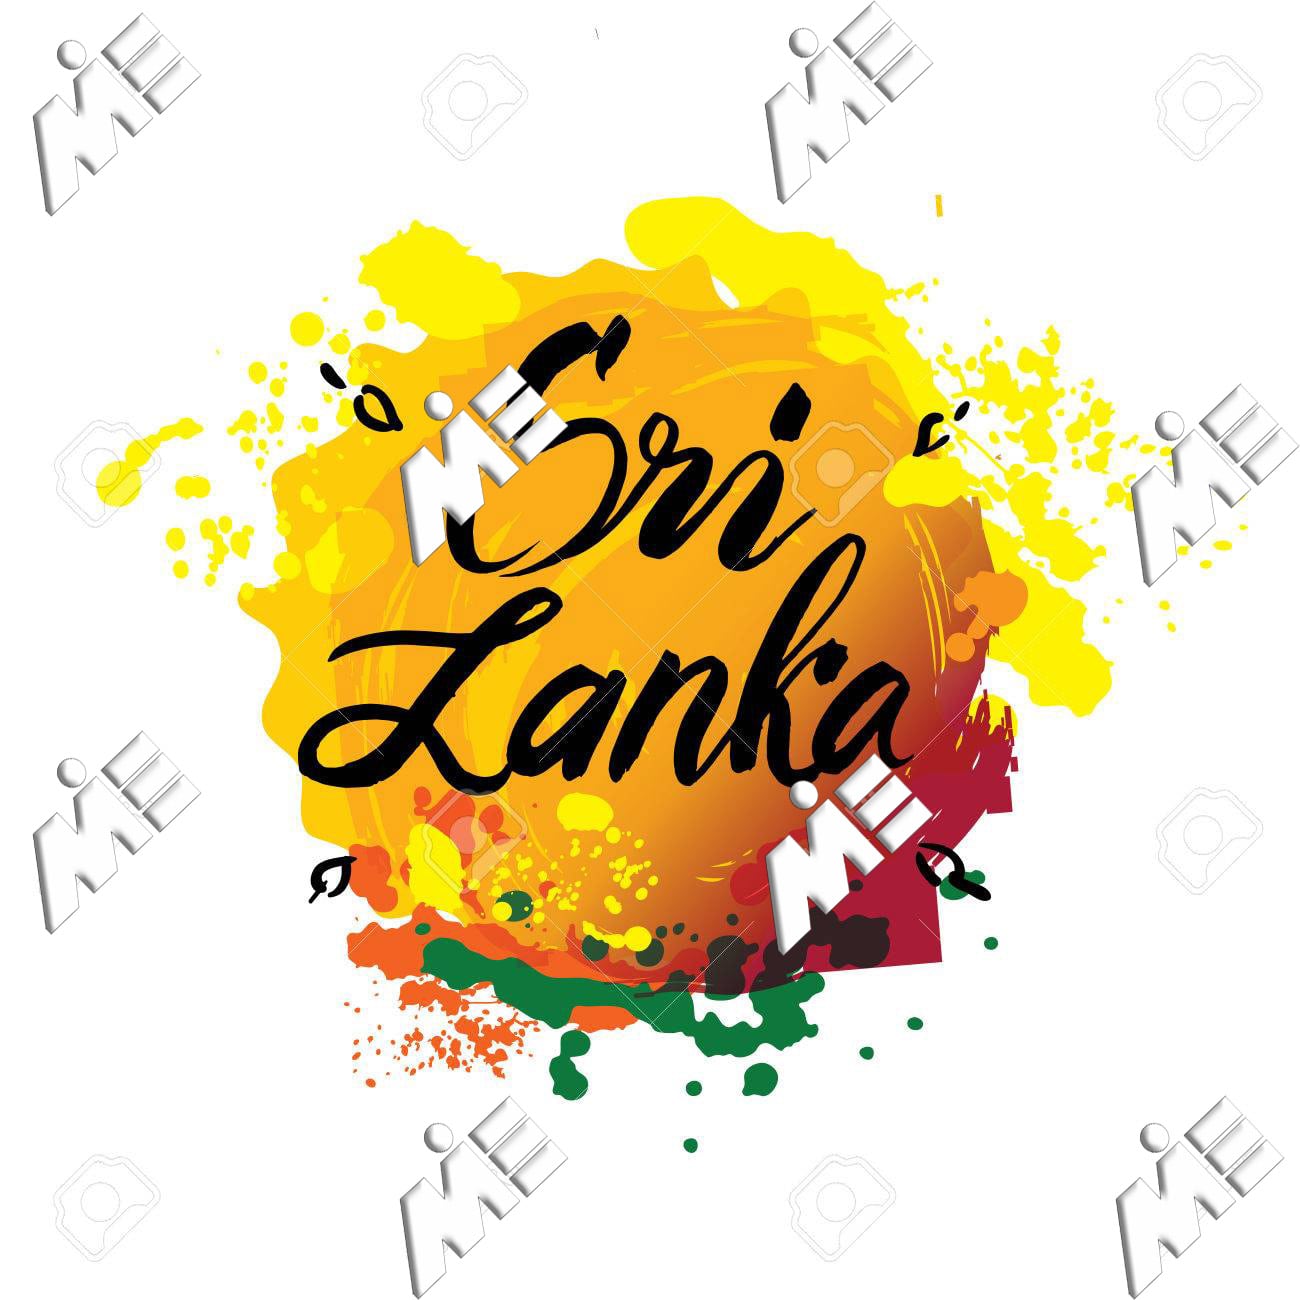 سری لانکا ـ ویزای سری لانکا ـ مهاجرت به سری لانکا ـ اقامت سری لانکا